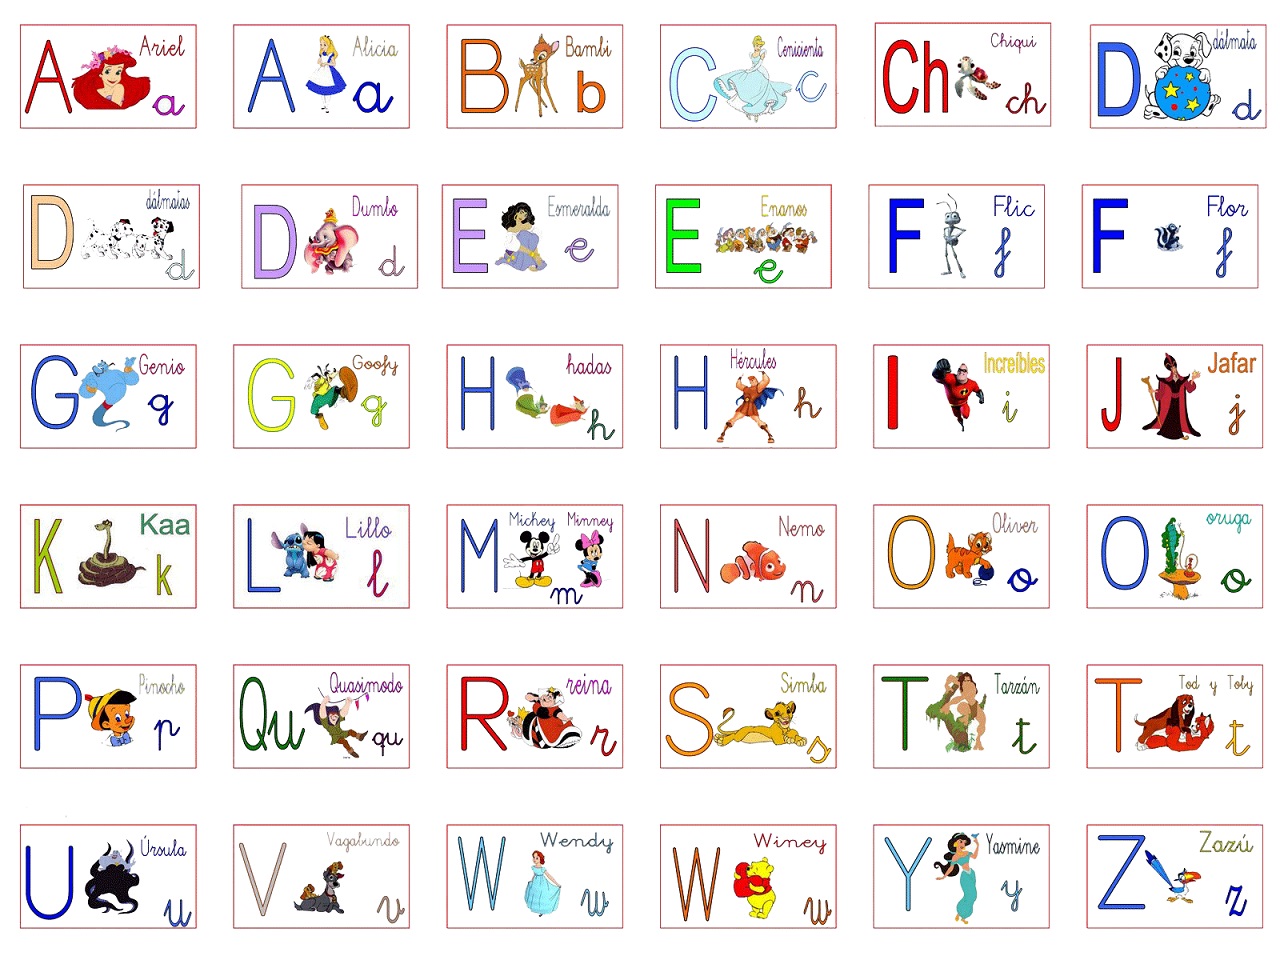 Fichas del abecedario para imprimir (7)